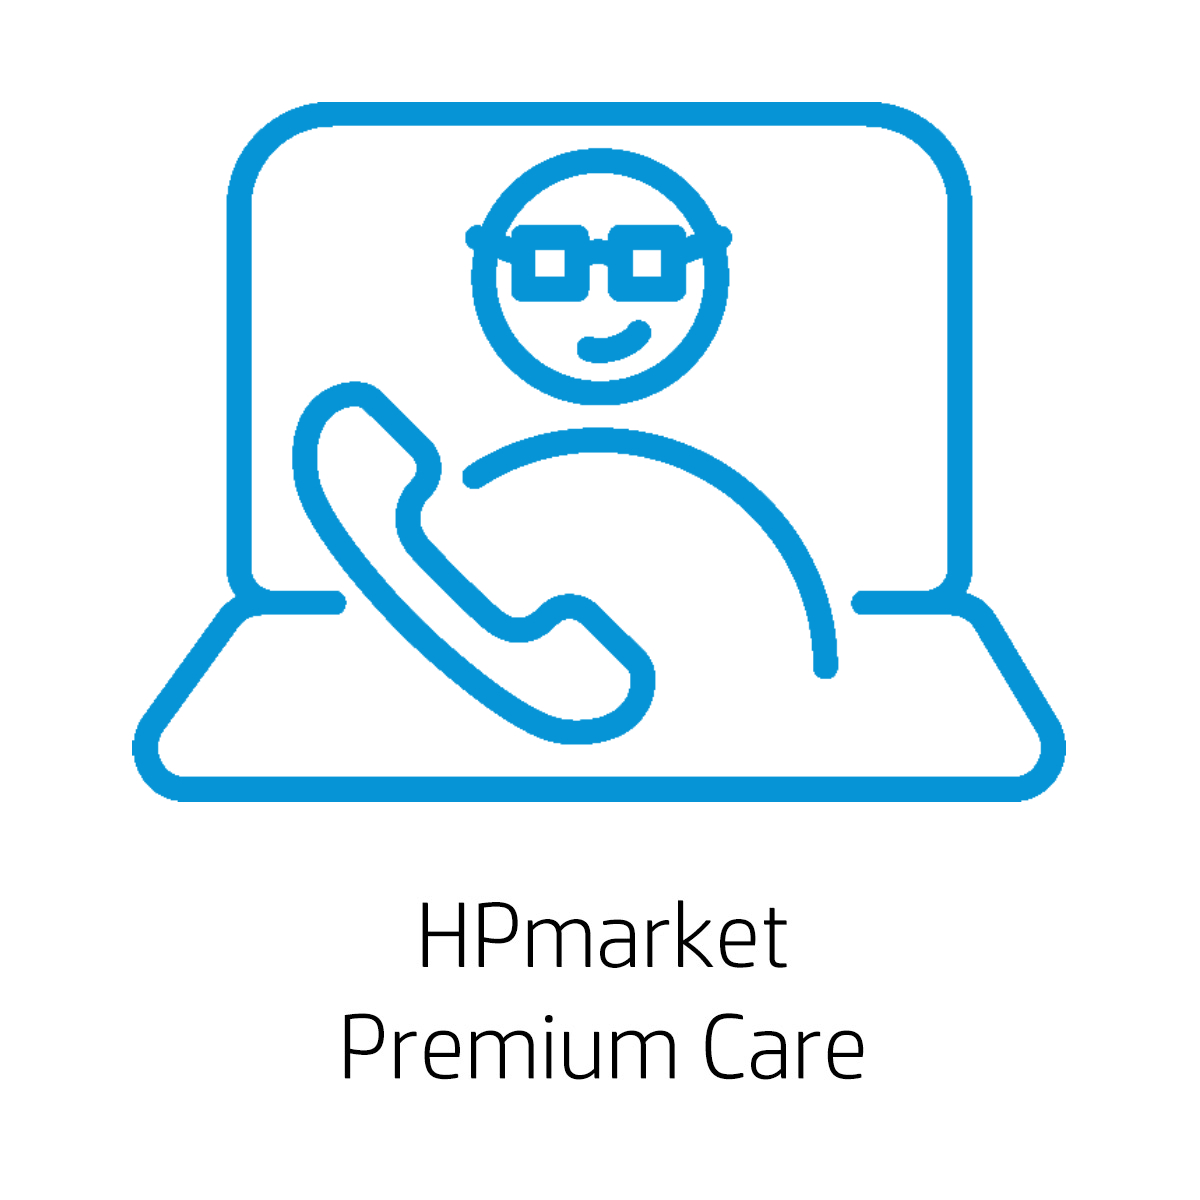 HPmarket Premium Care - Úvodní instalace včetně přetažení dat (ITPHPMPR)